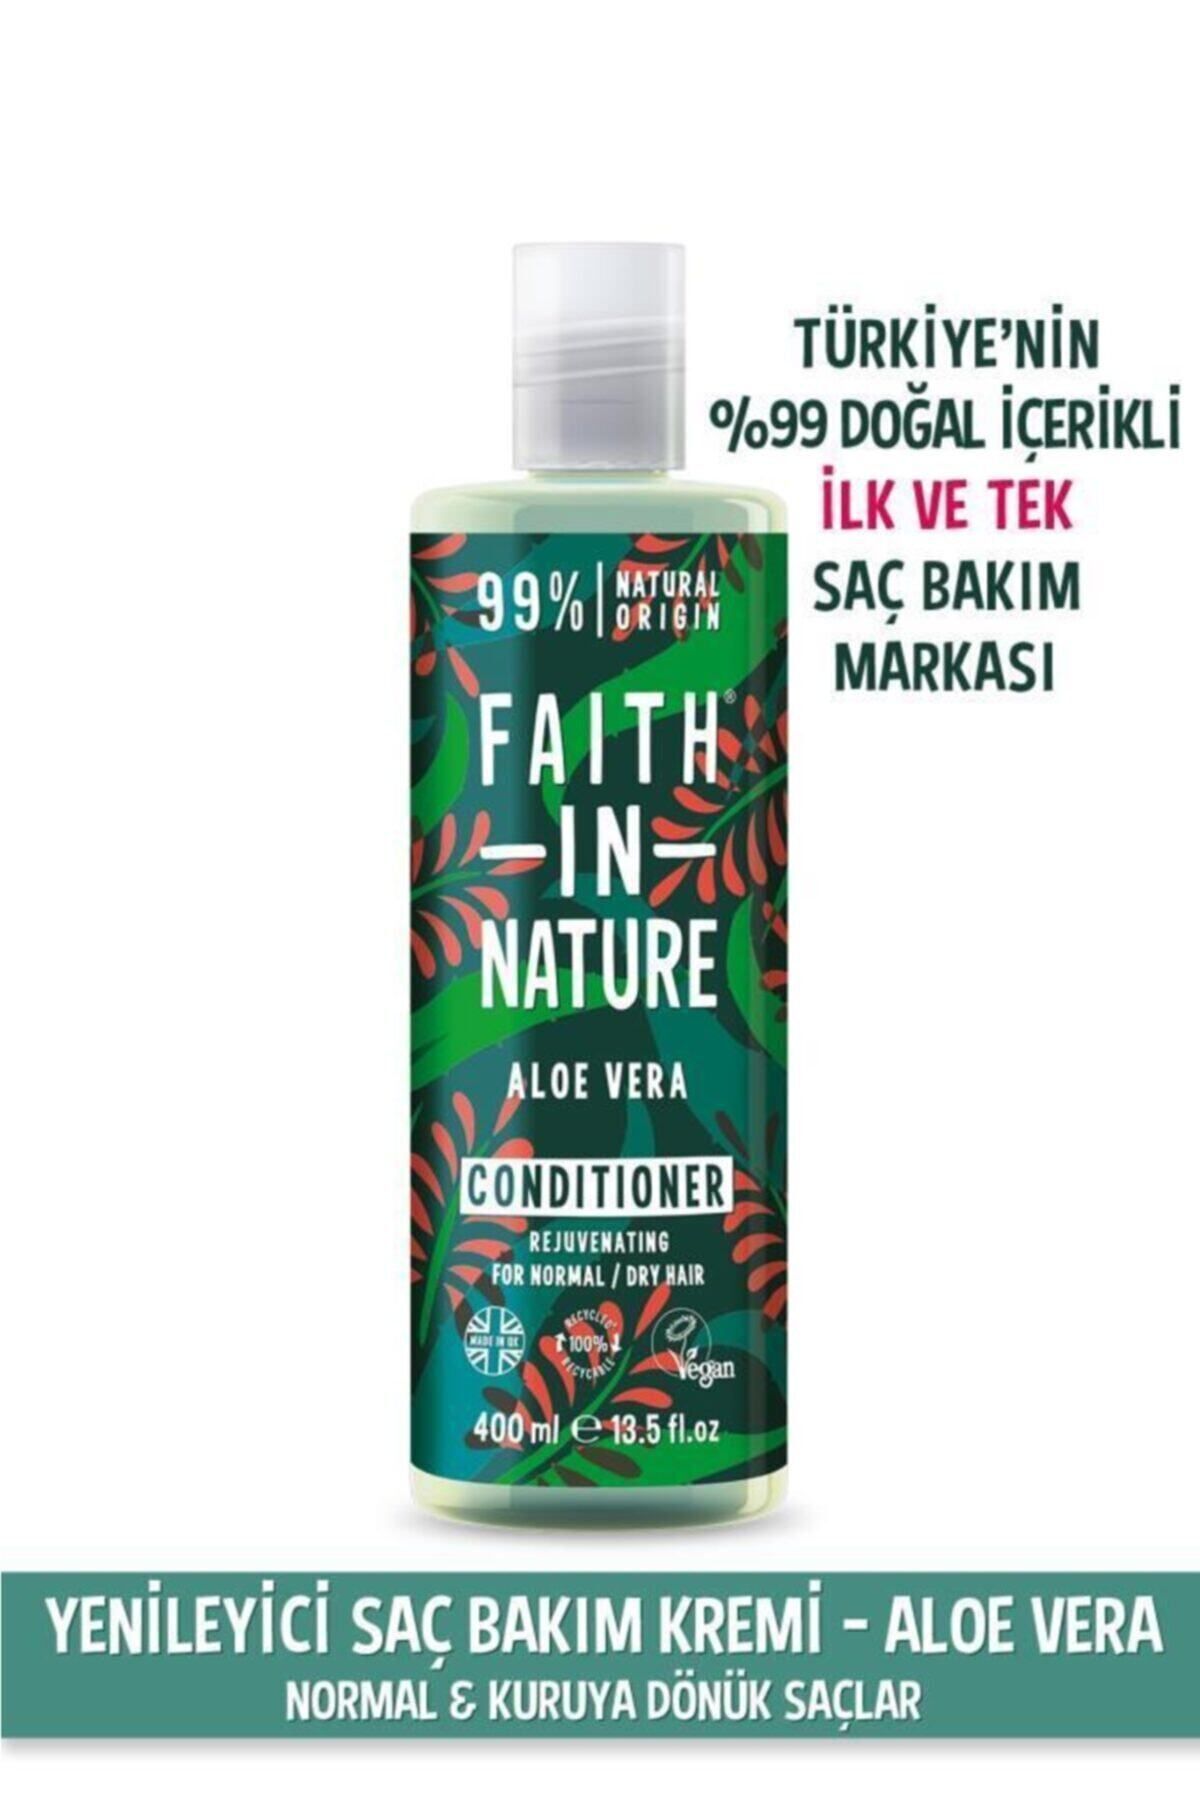 Faith In Nature %99 Doğal Yenileyici Saç Bakım Kremi Aloe Vera Normal&Kuruya Dönük Saçlar İçin